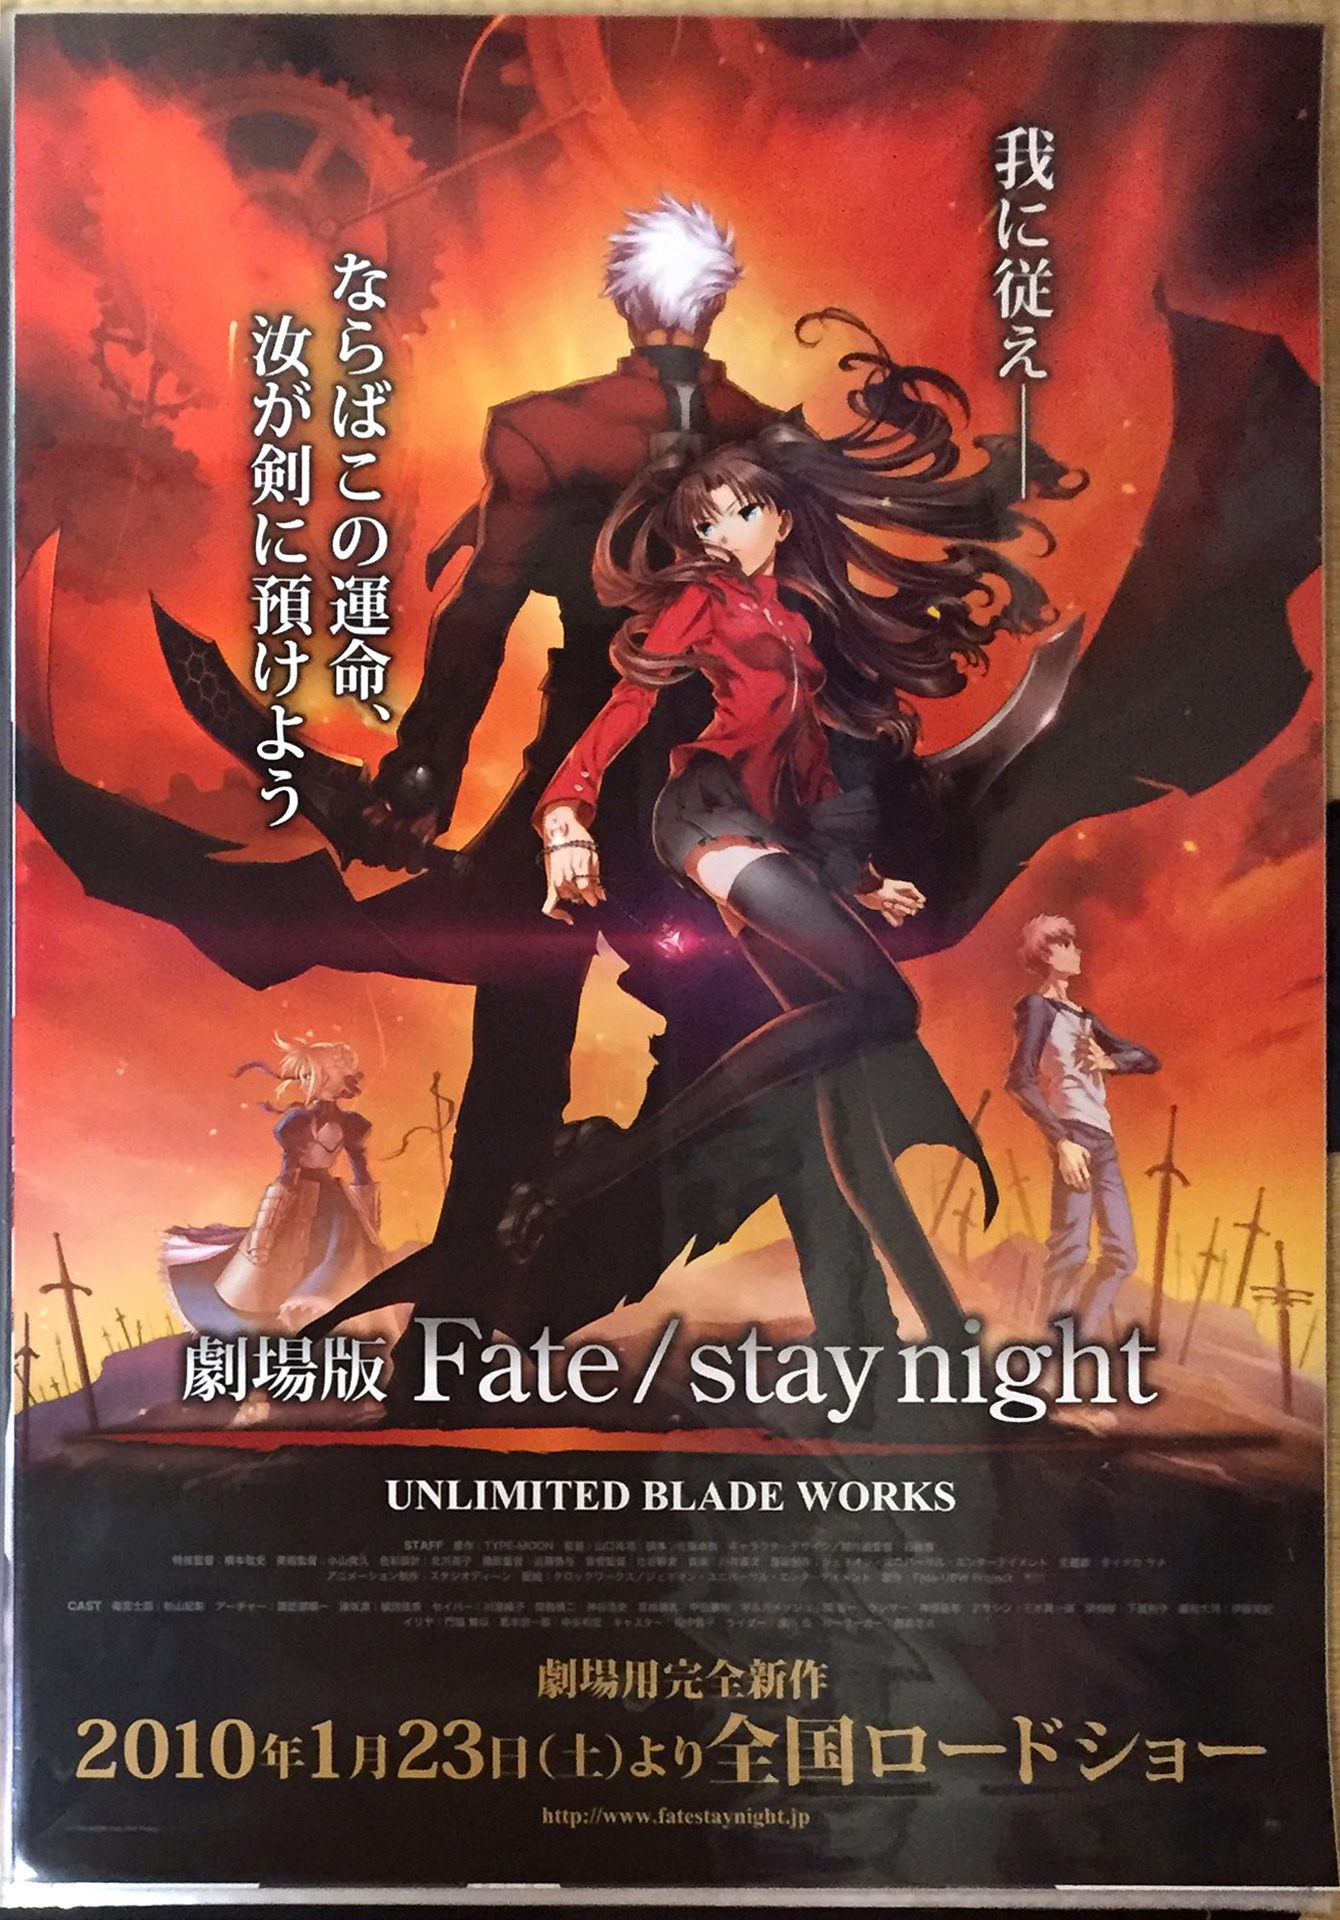 ポスター紹介 #031 劇場版 Fate/stay night UNLIMITED BLADE WORKS 